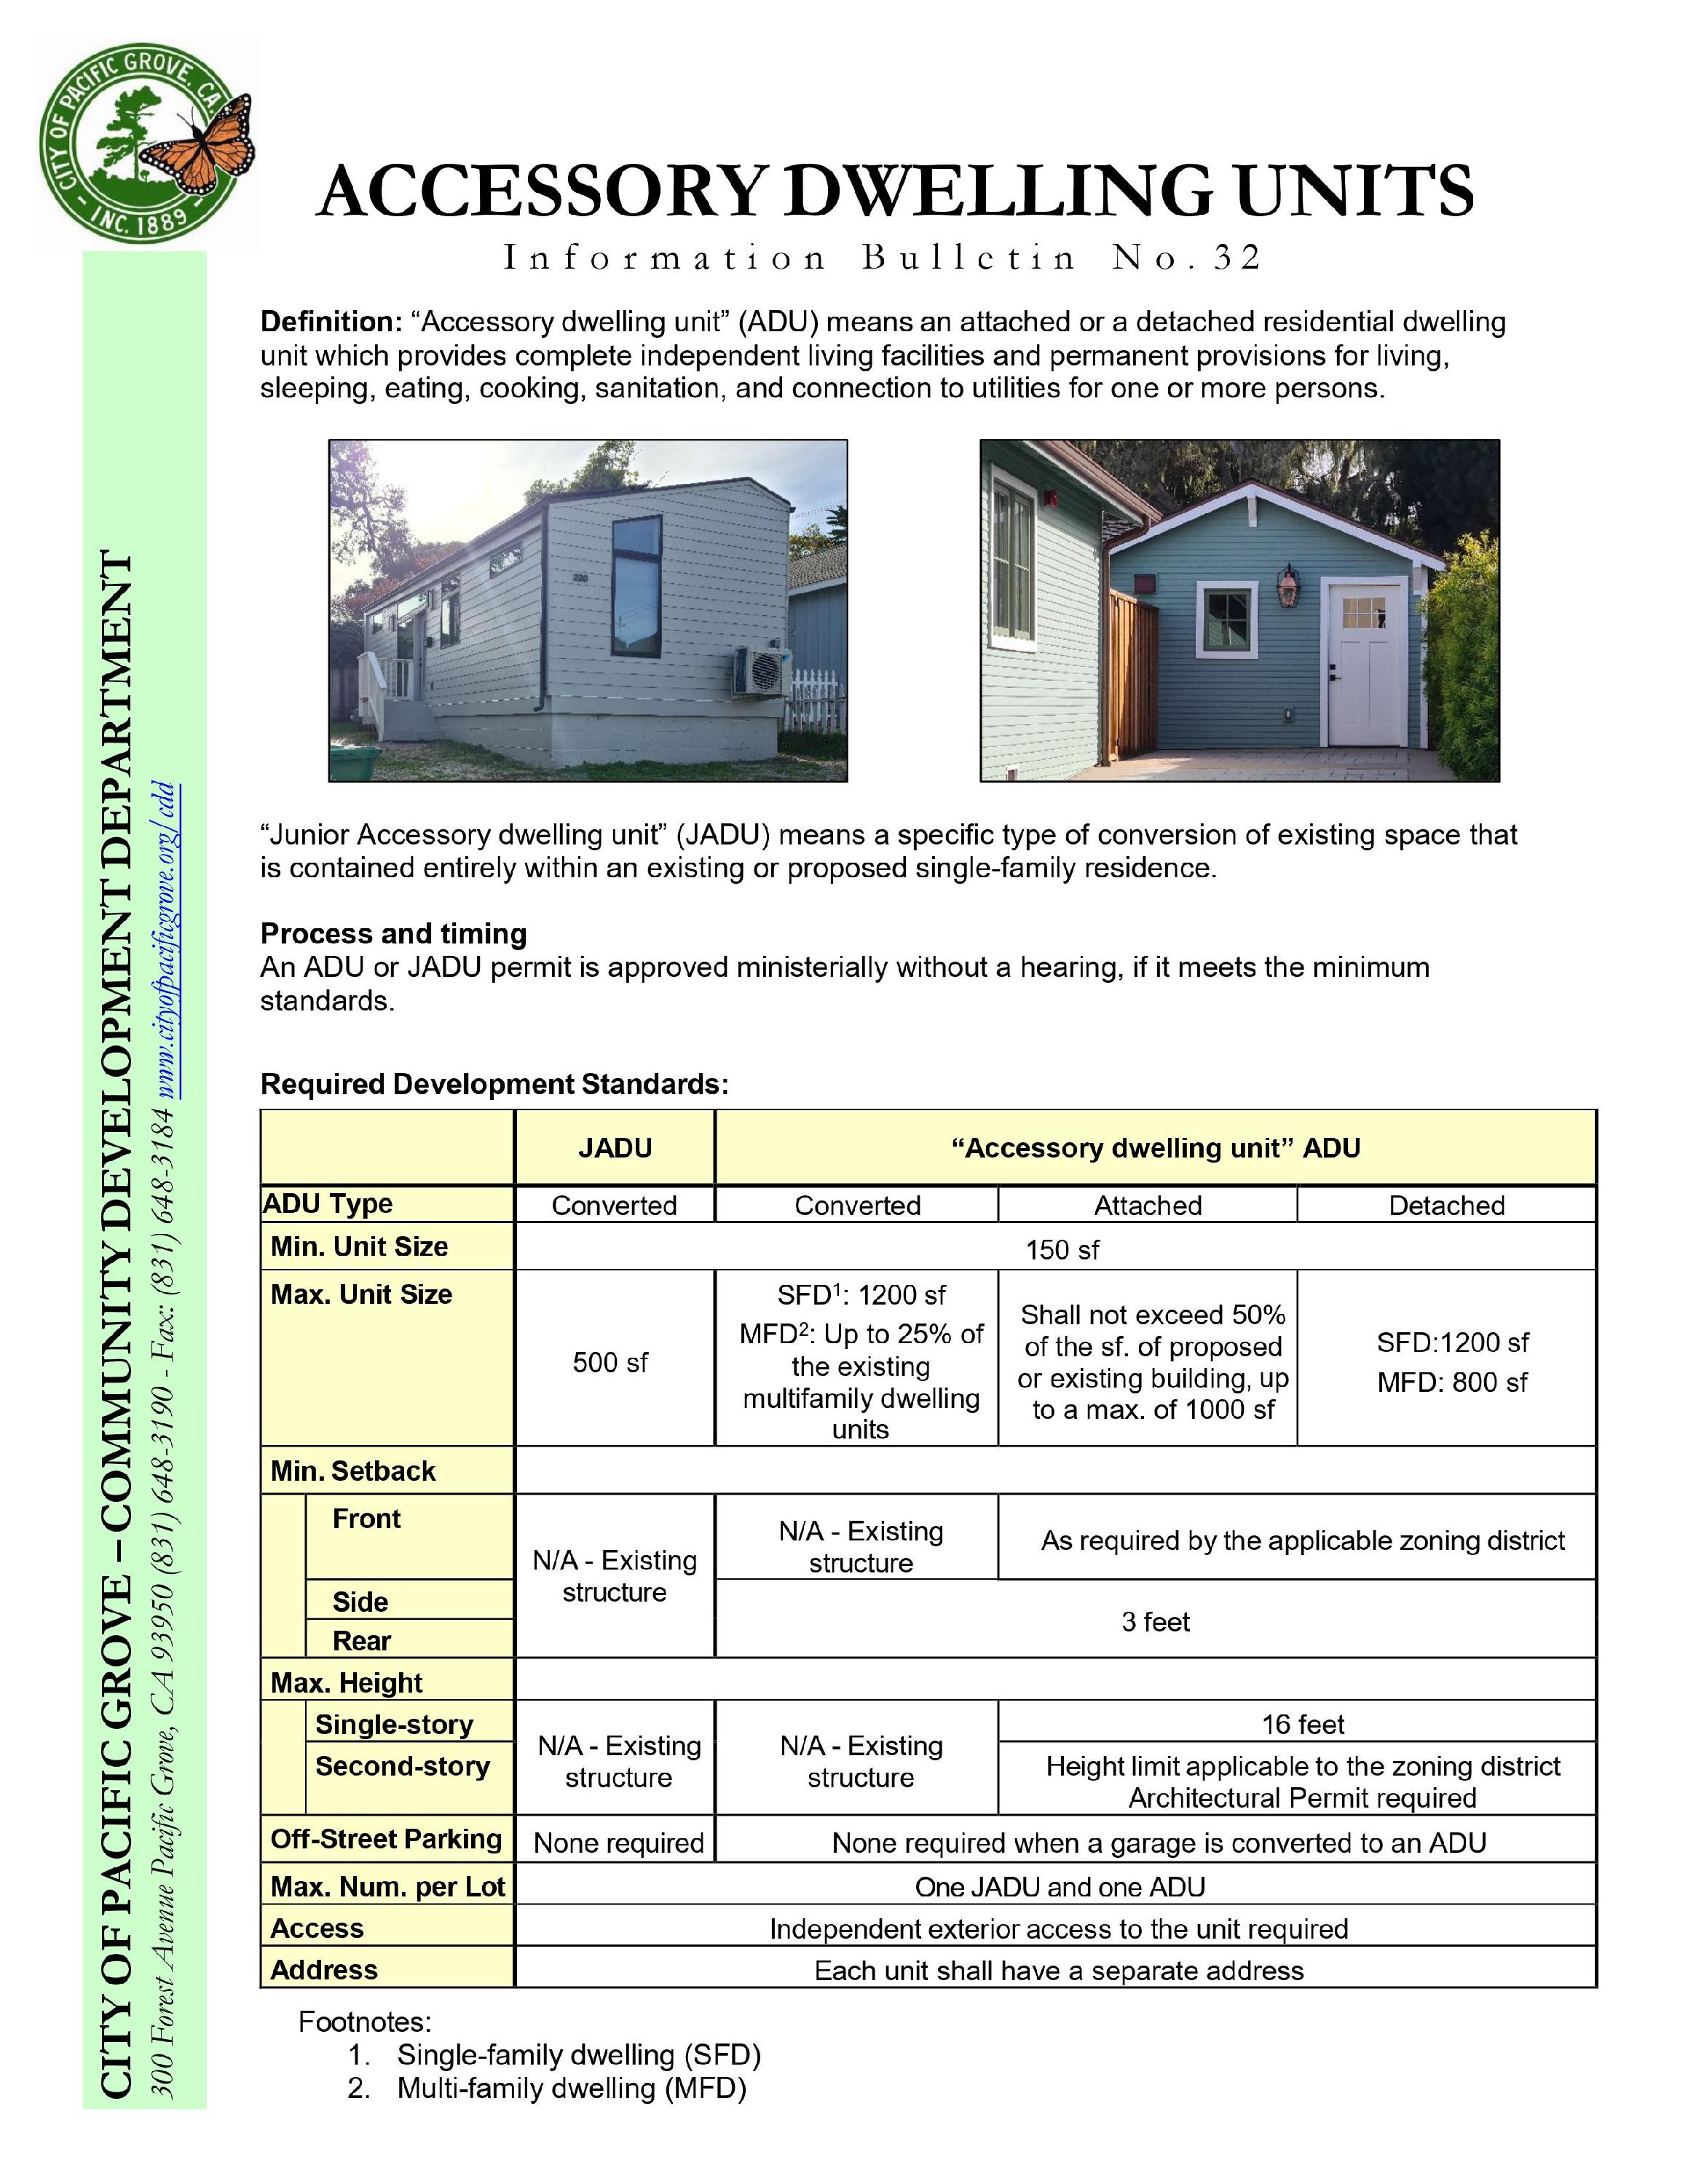 Accessory Dwelling Unit (ADU) Information Bulletin No. 32